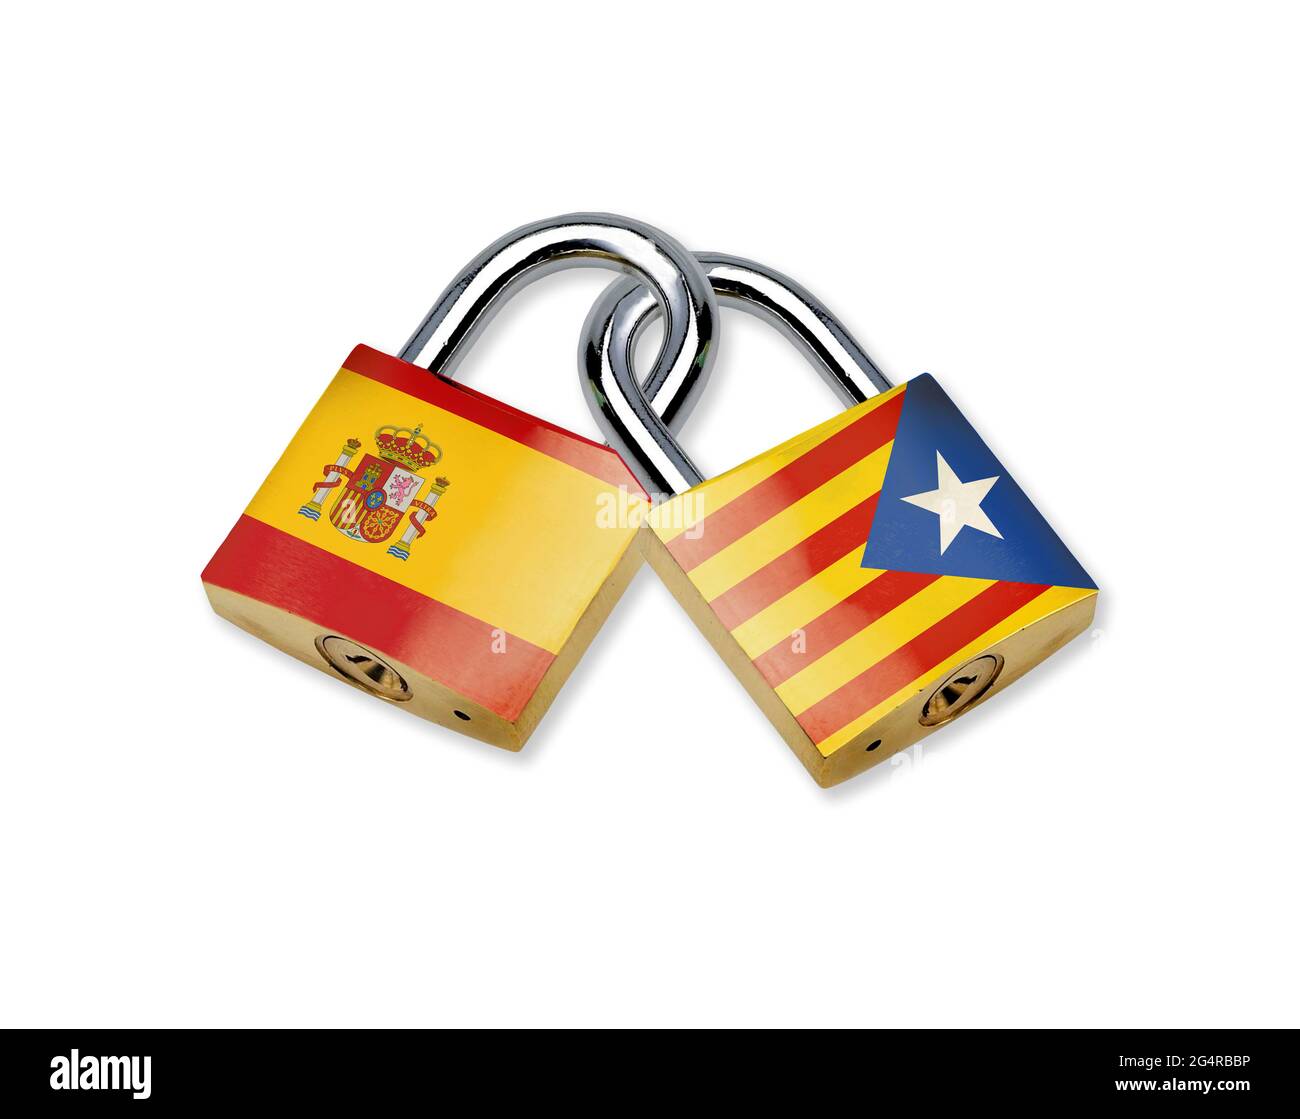 Cadenas emboîtés avec drapeau de l'Espagne et drapeau de la Catalogne isolé sur fond blanc. Image conceptuelle du conflit d'indépendance. Espagnol Banque D'Images